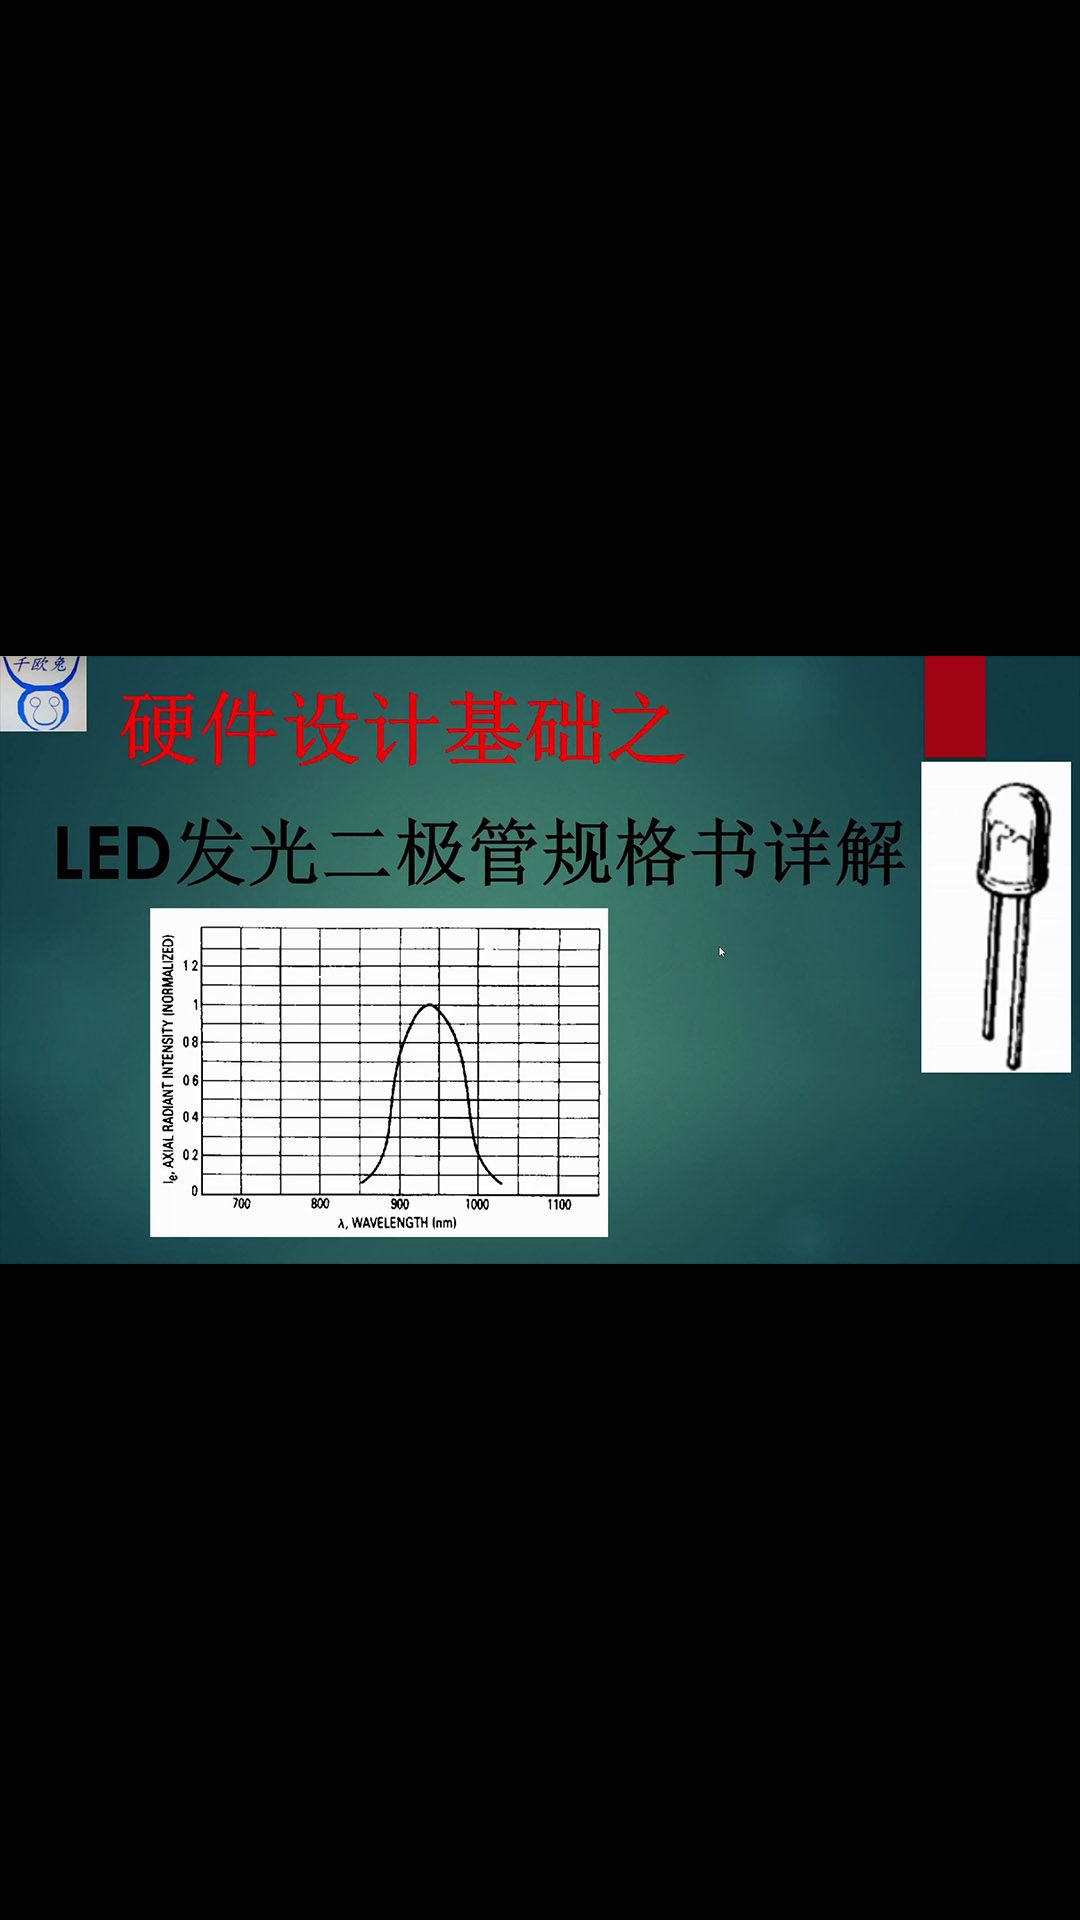 【千欧兔】硬件设计基础之LED发光二极管规格书详解 - 1